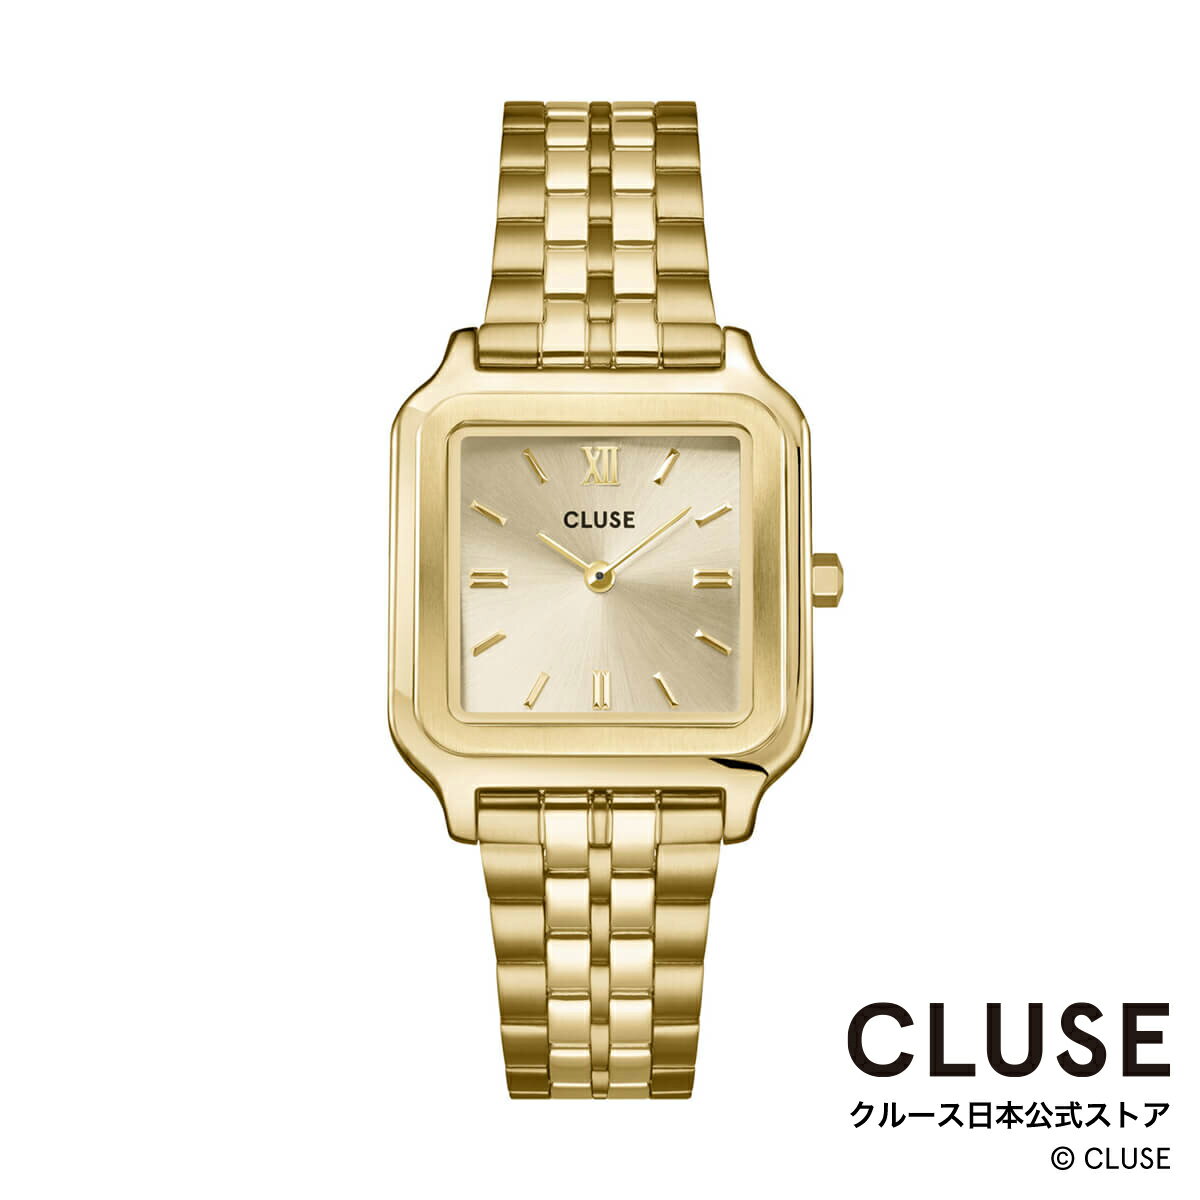 クルース ビジネス腕時計 レディース クルース CLUSE 日本公式ストア グラシューズ シャンパンゴールド ステンレスベルト レディース 女性 腕時計 時計 防水 クォーツ